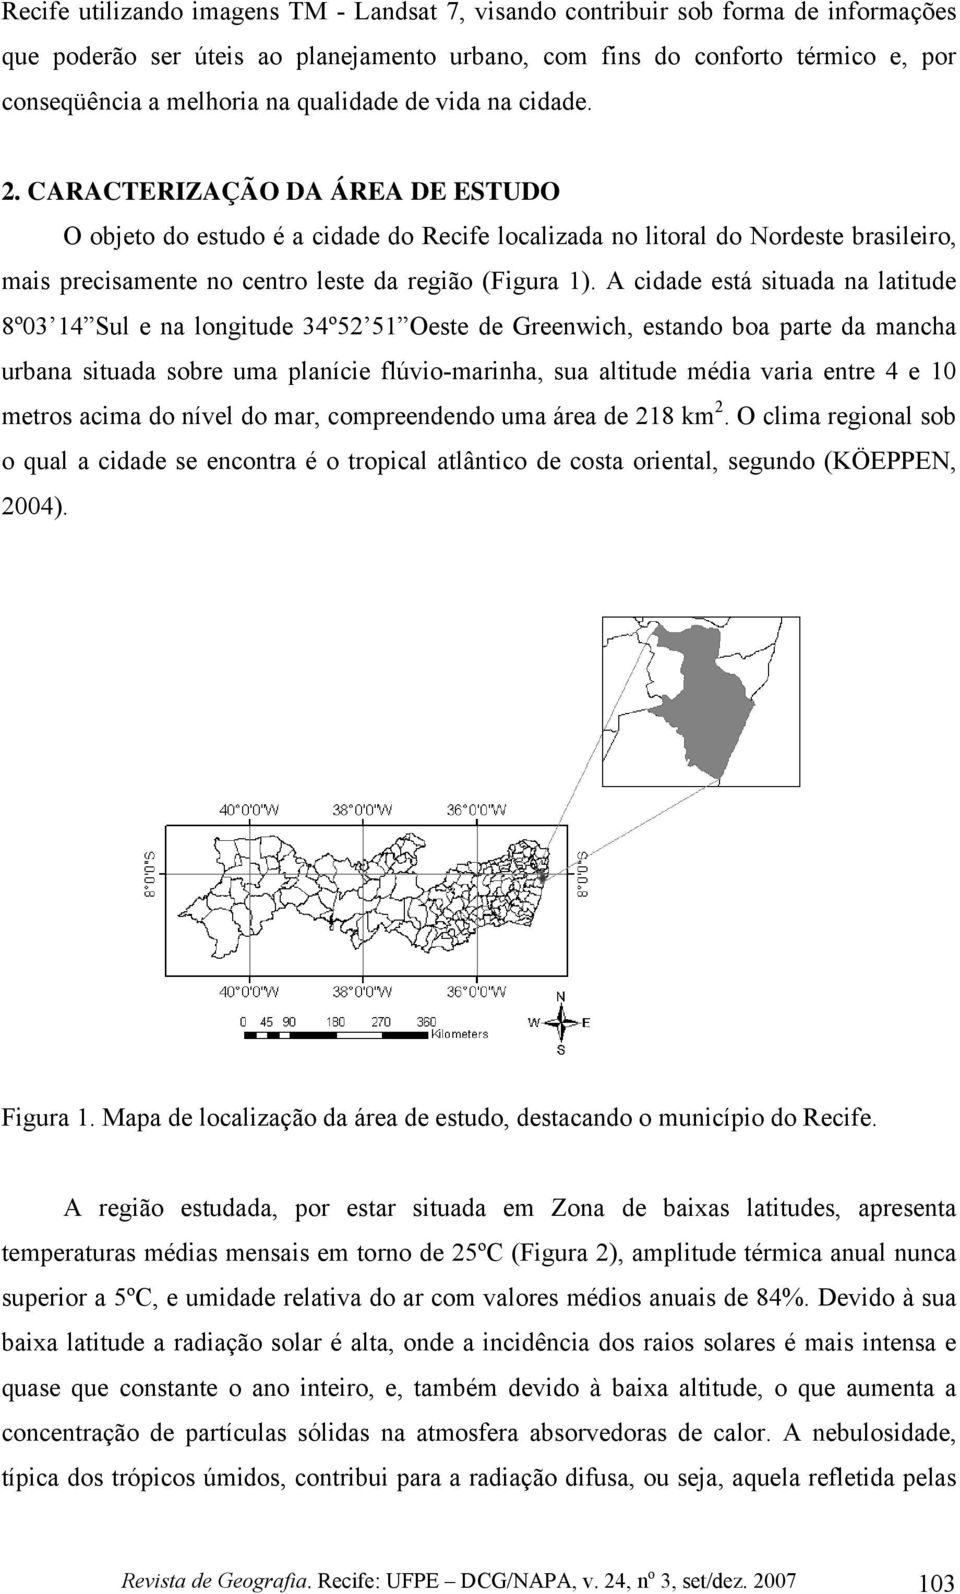 CARACTERIZAÇÃO DA ÁREA DE ESTUDO O objeto do estudo é a cidade do Recife localizada no litoral do Nordeste brasileiro, mais precisamente no centro leste da região (Figura 1).